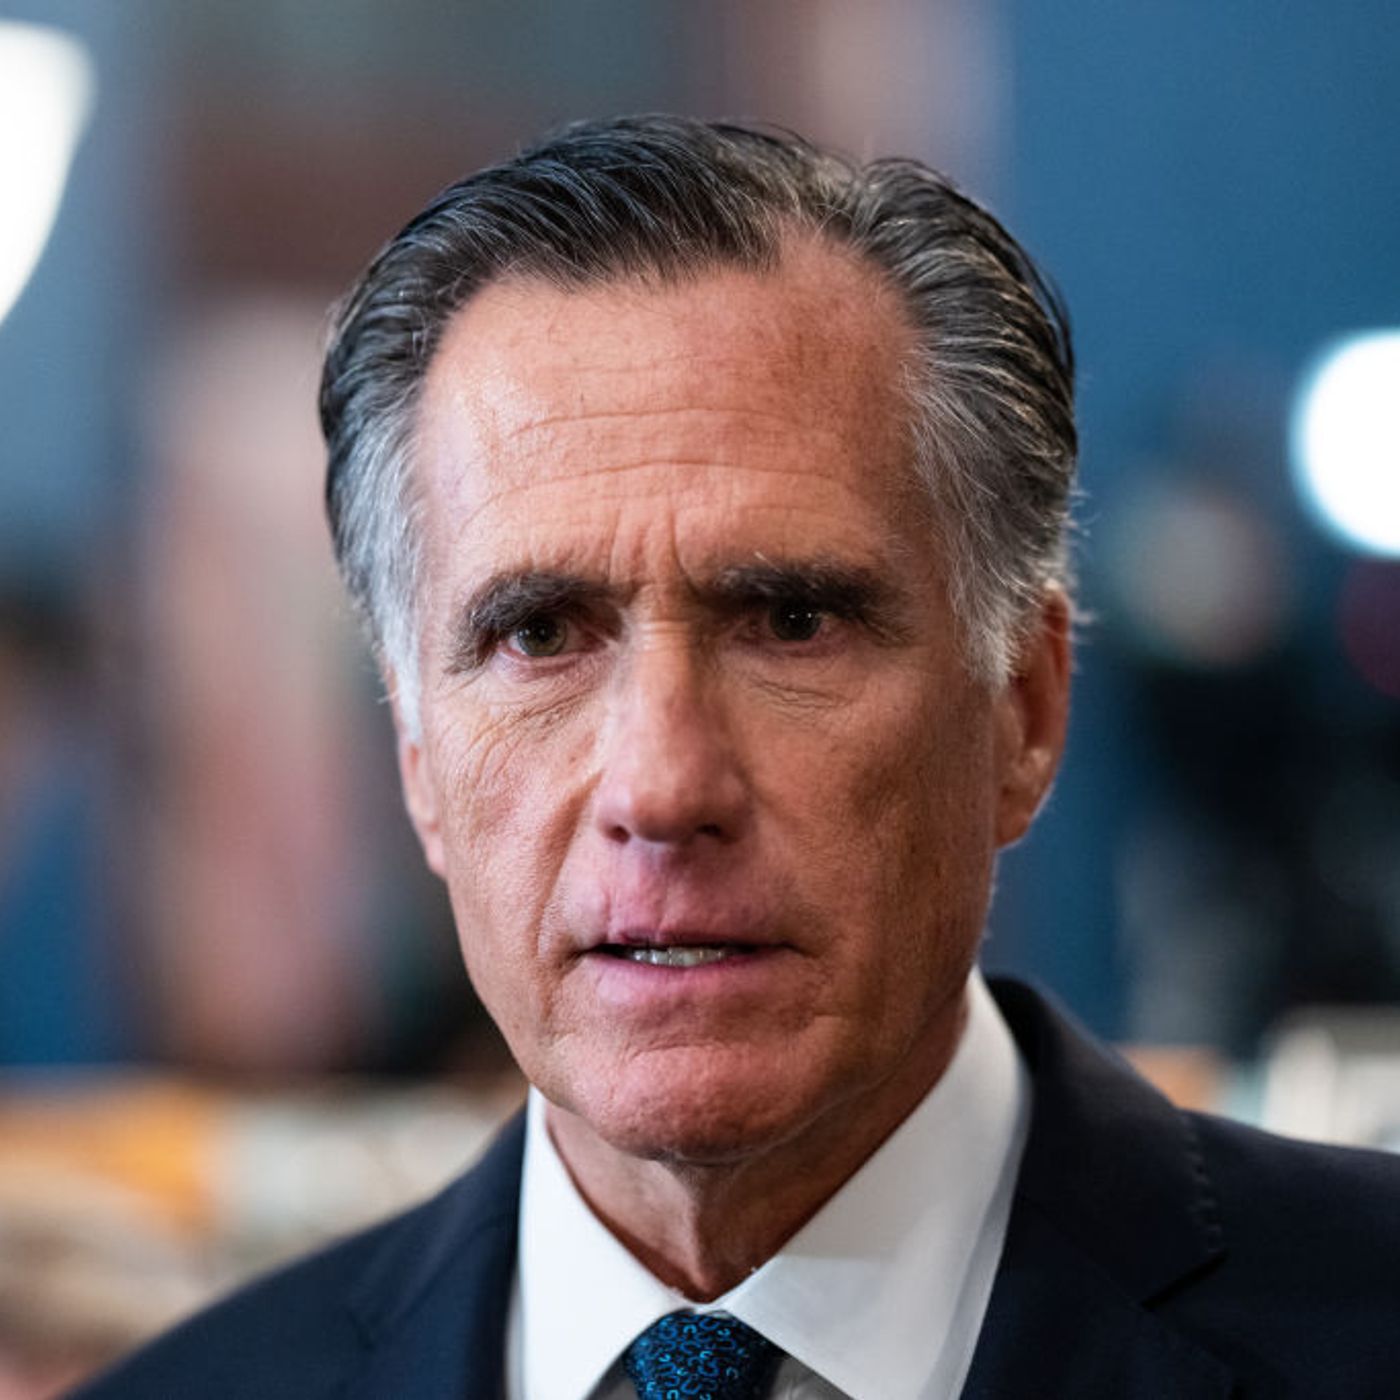 Have we seen the last of Mitt Romney?